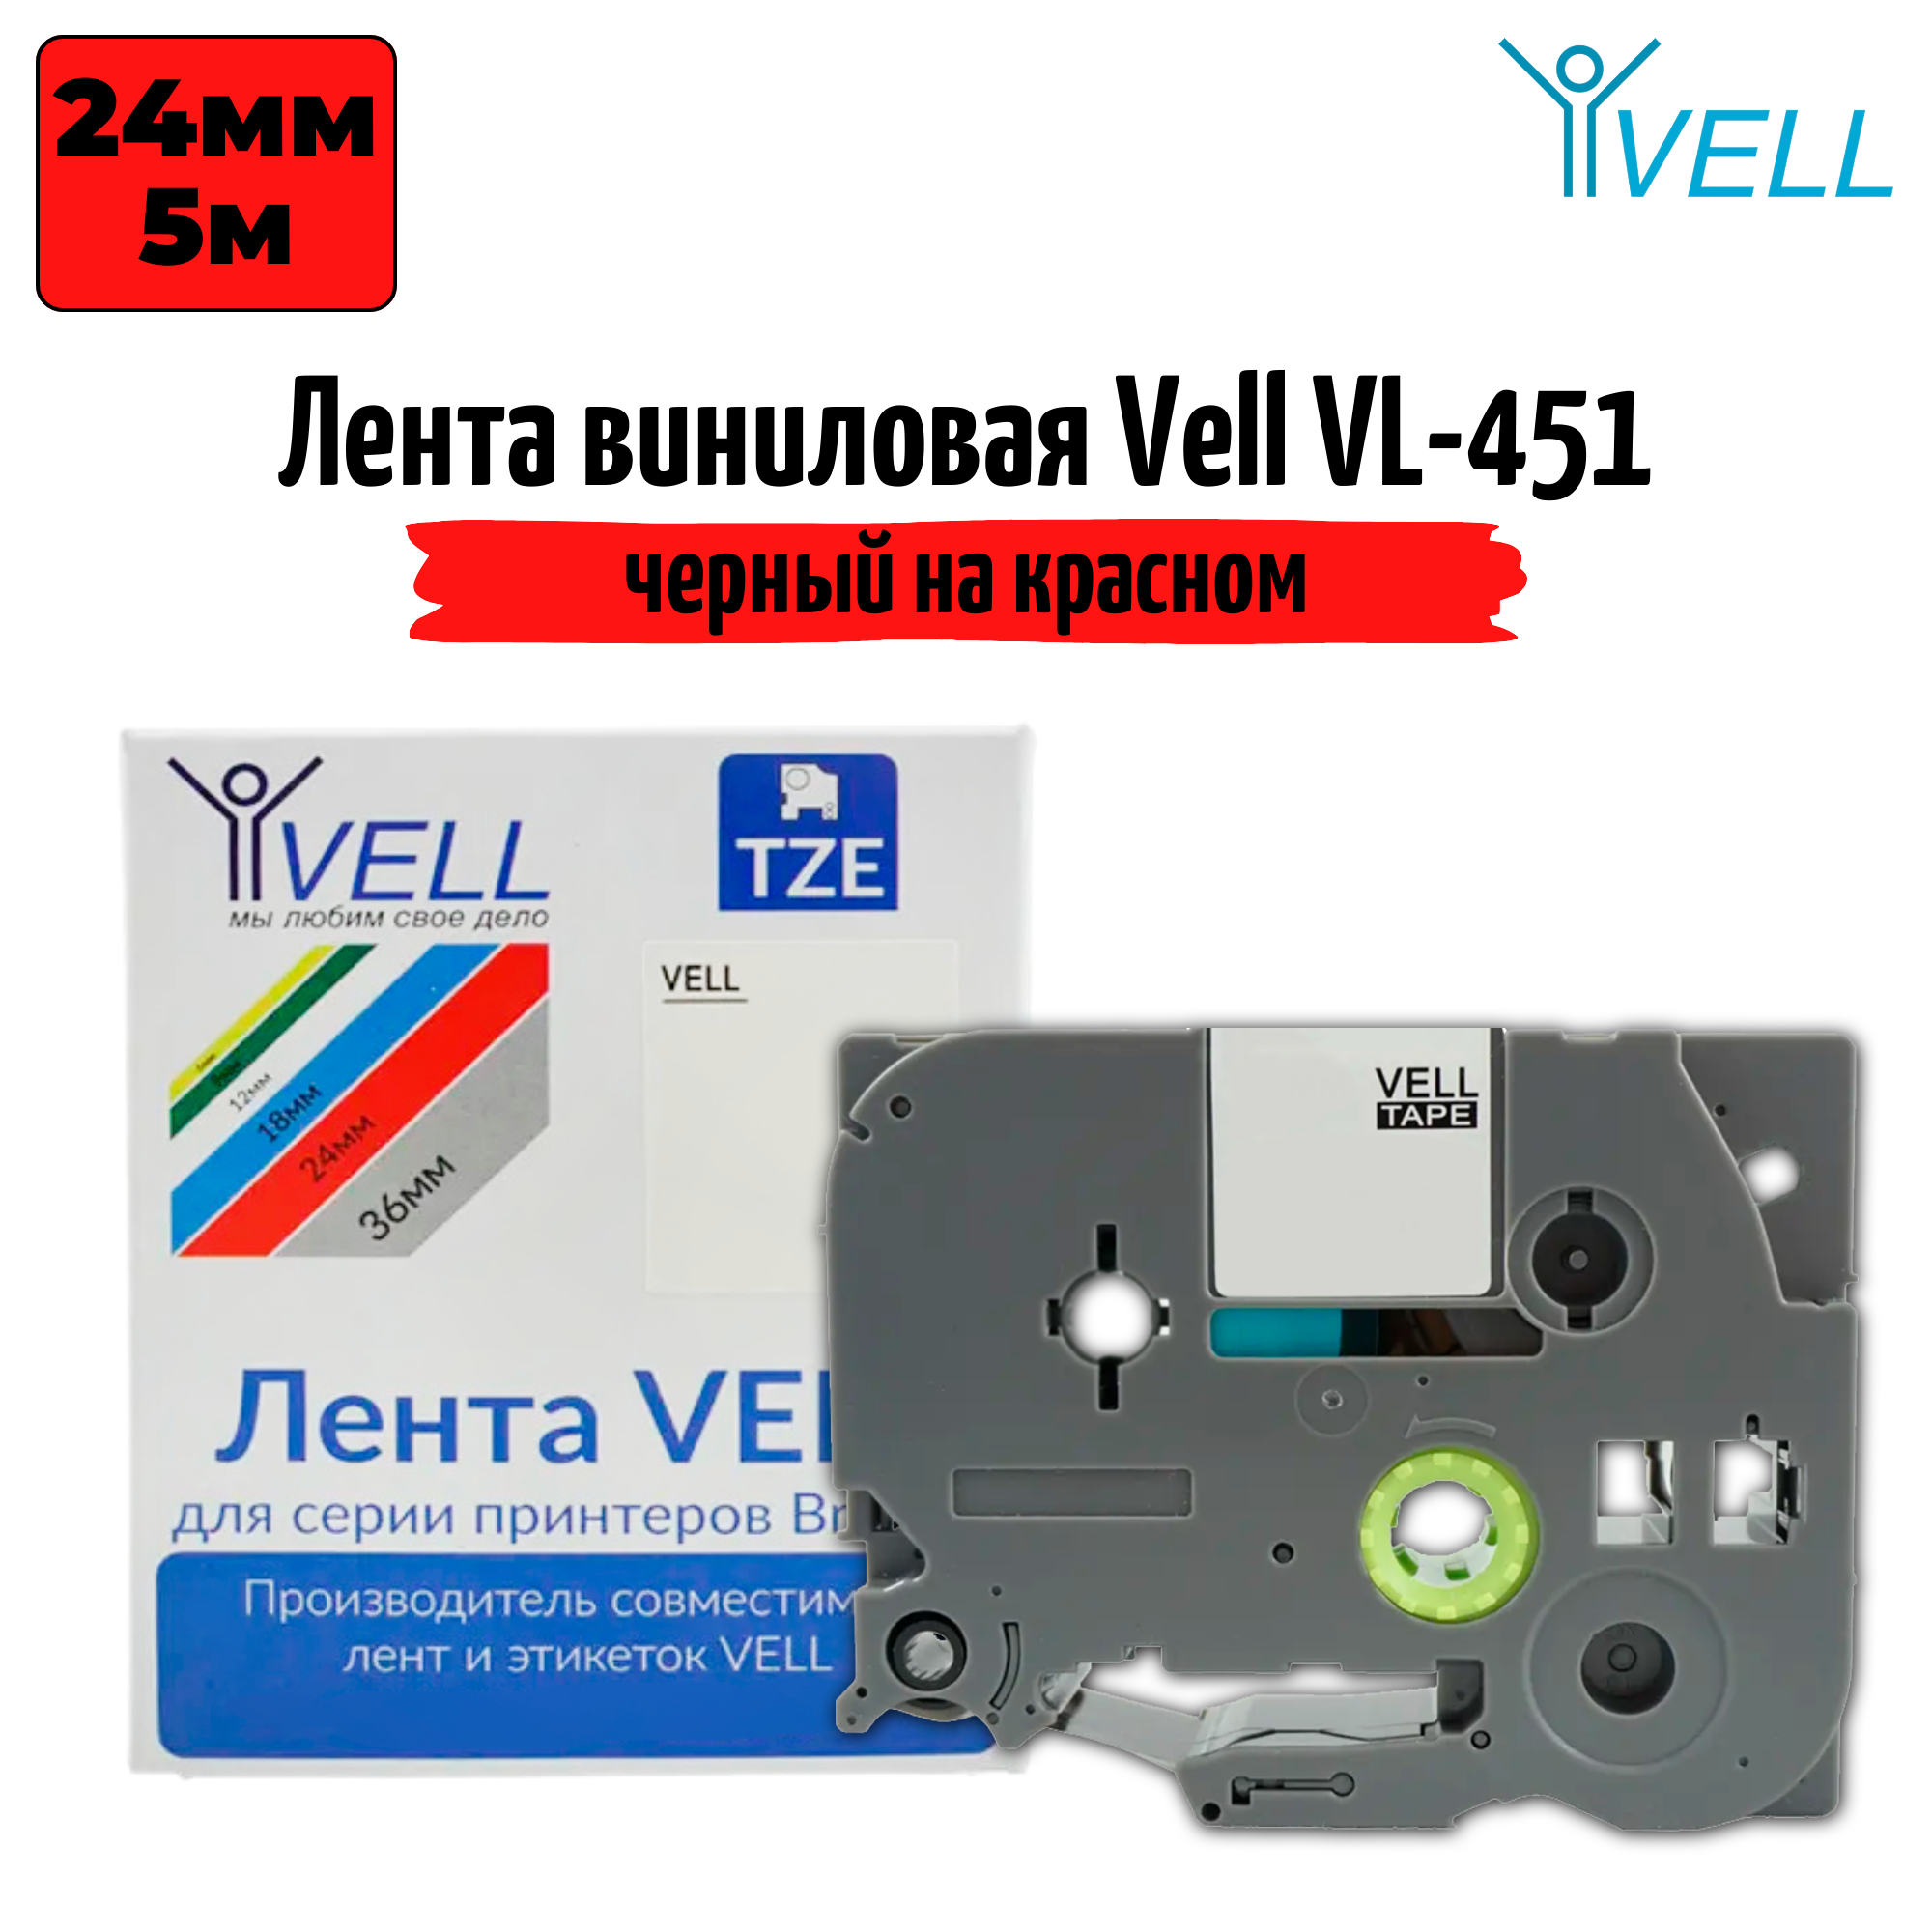 Лента виниловая Vell V-451 (24 мм, черный на красном)